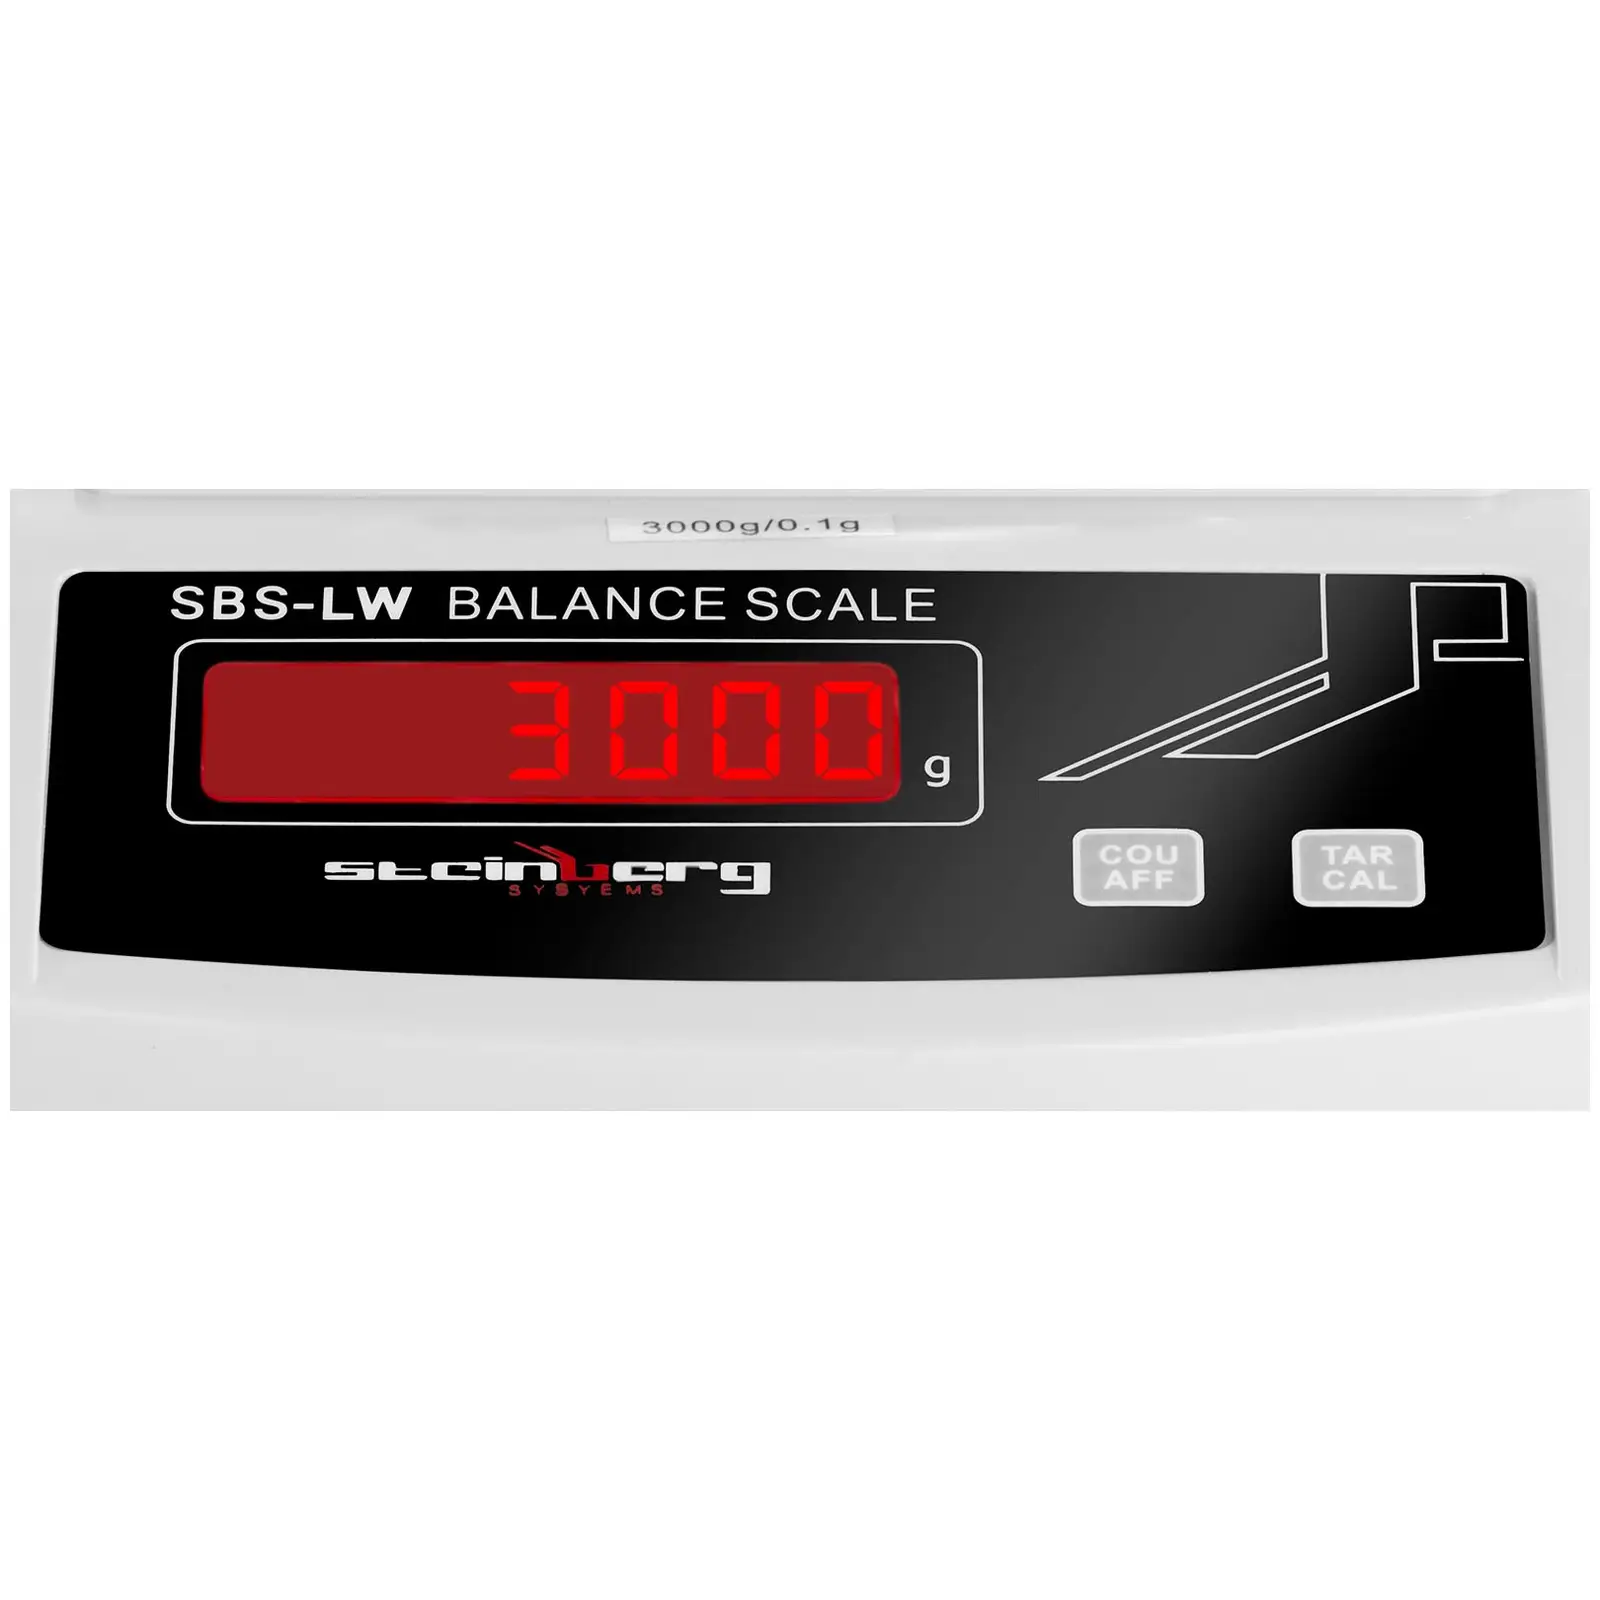 Precision Scale - 3000 g / 0.1 g - White